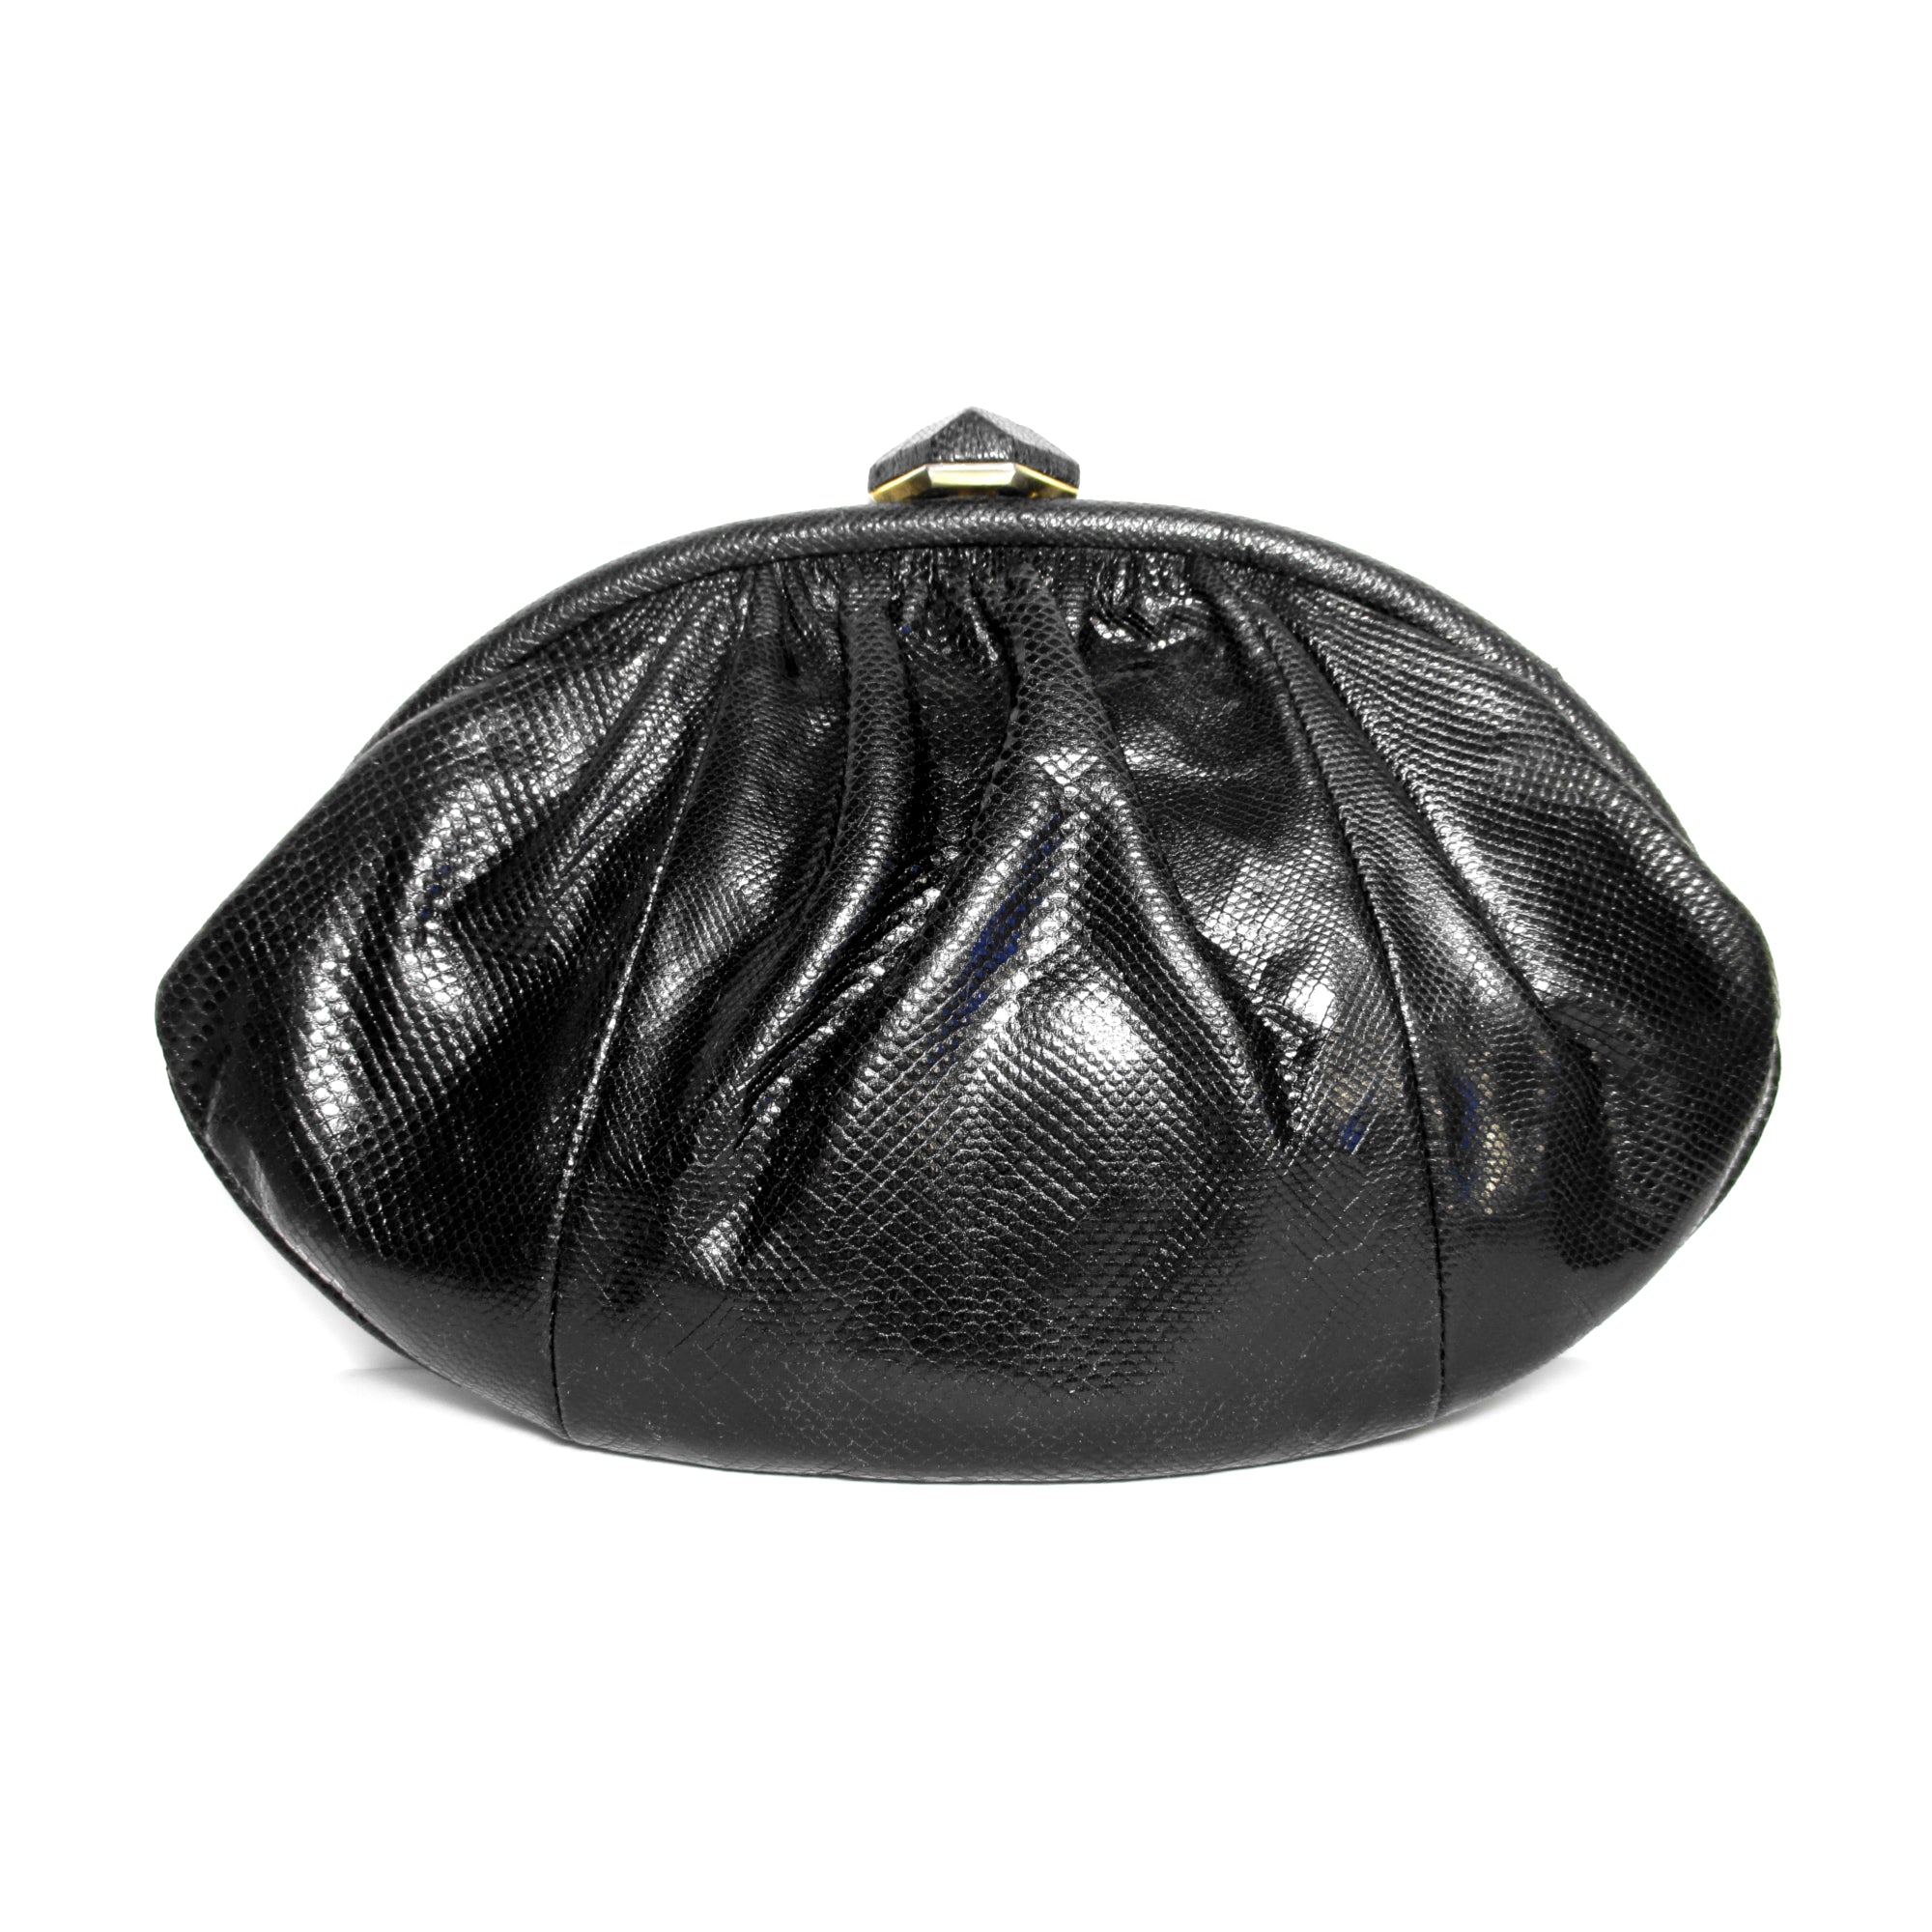 Vintage 1950s 60s Black Wool Felt Purse Kelly Bag Handbag 